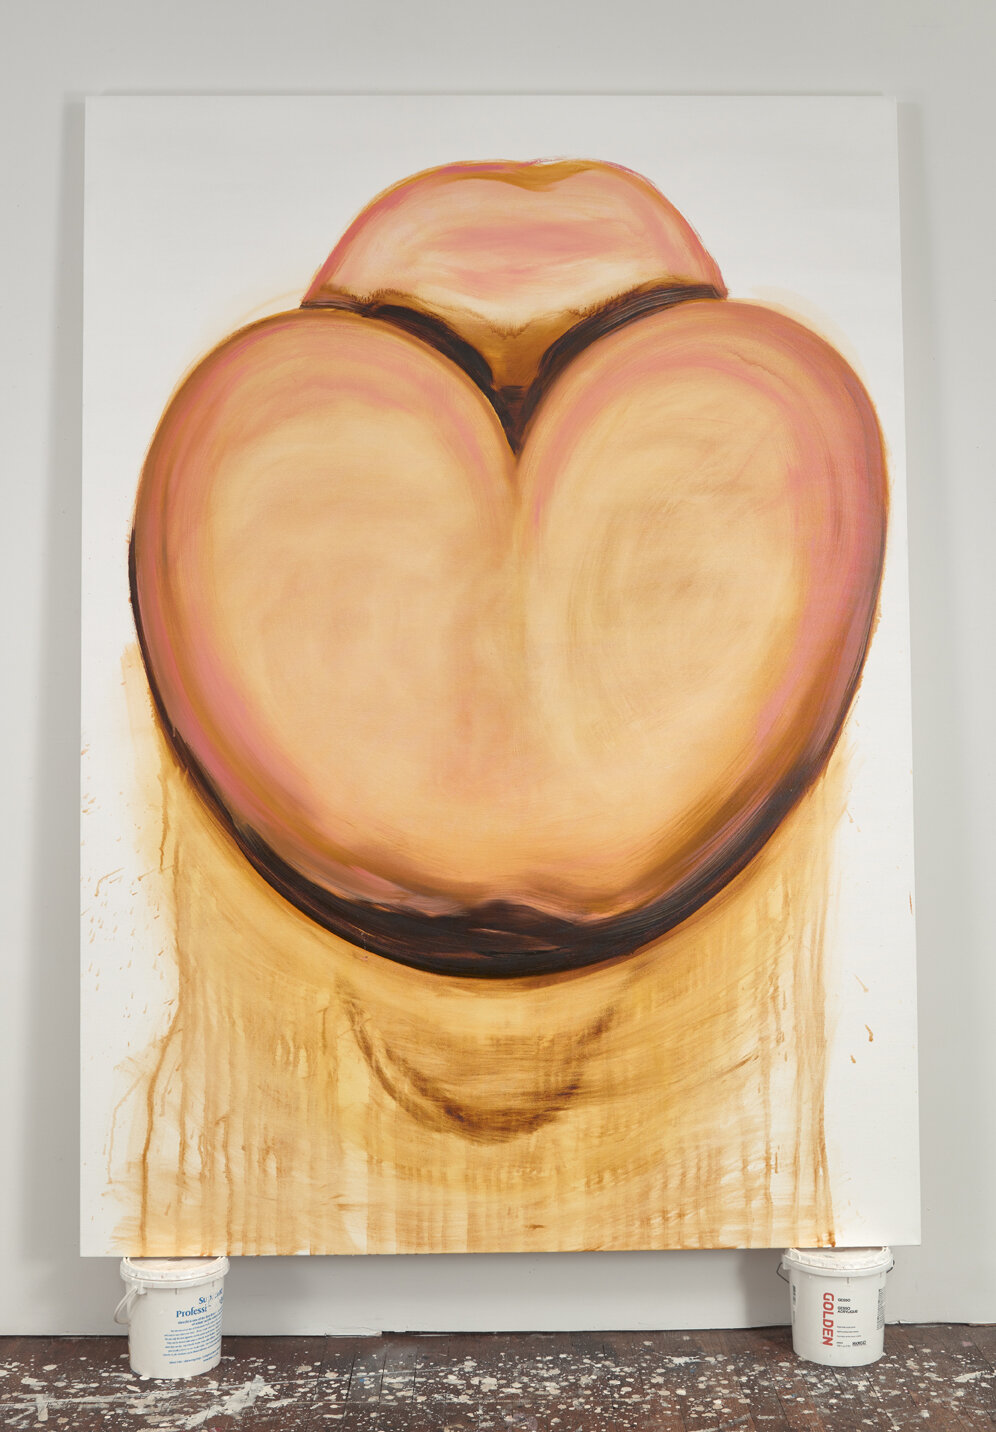 Inverted Venus Figure, Sliding Self Portrait, 2020, oil on canvas, 84 x 60"